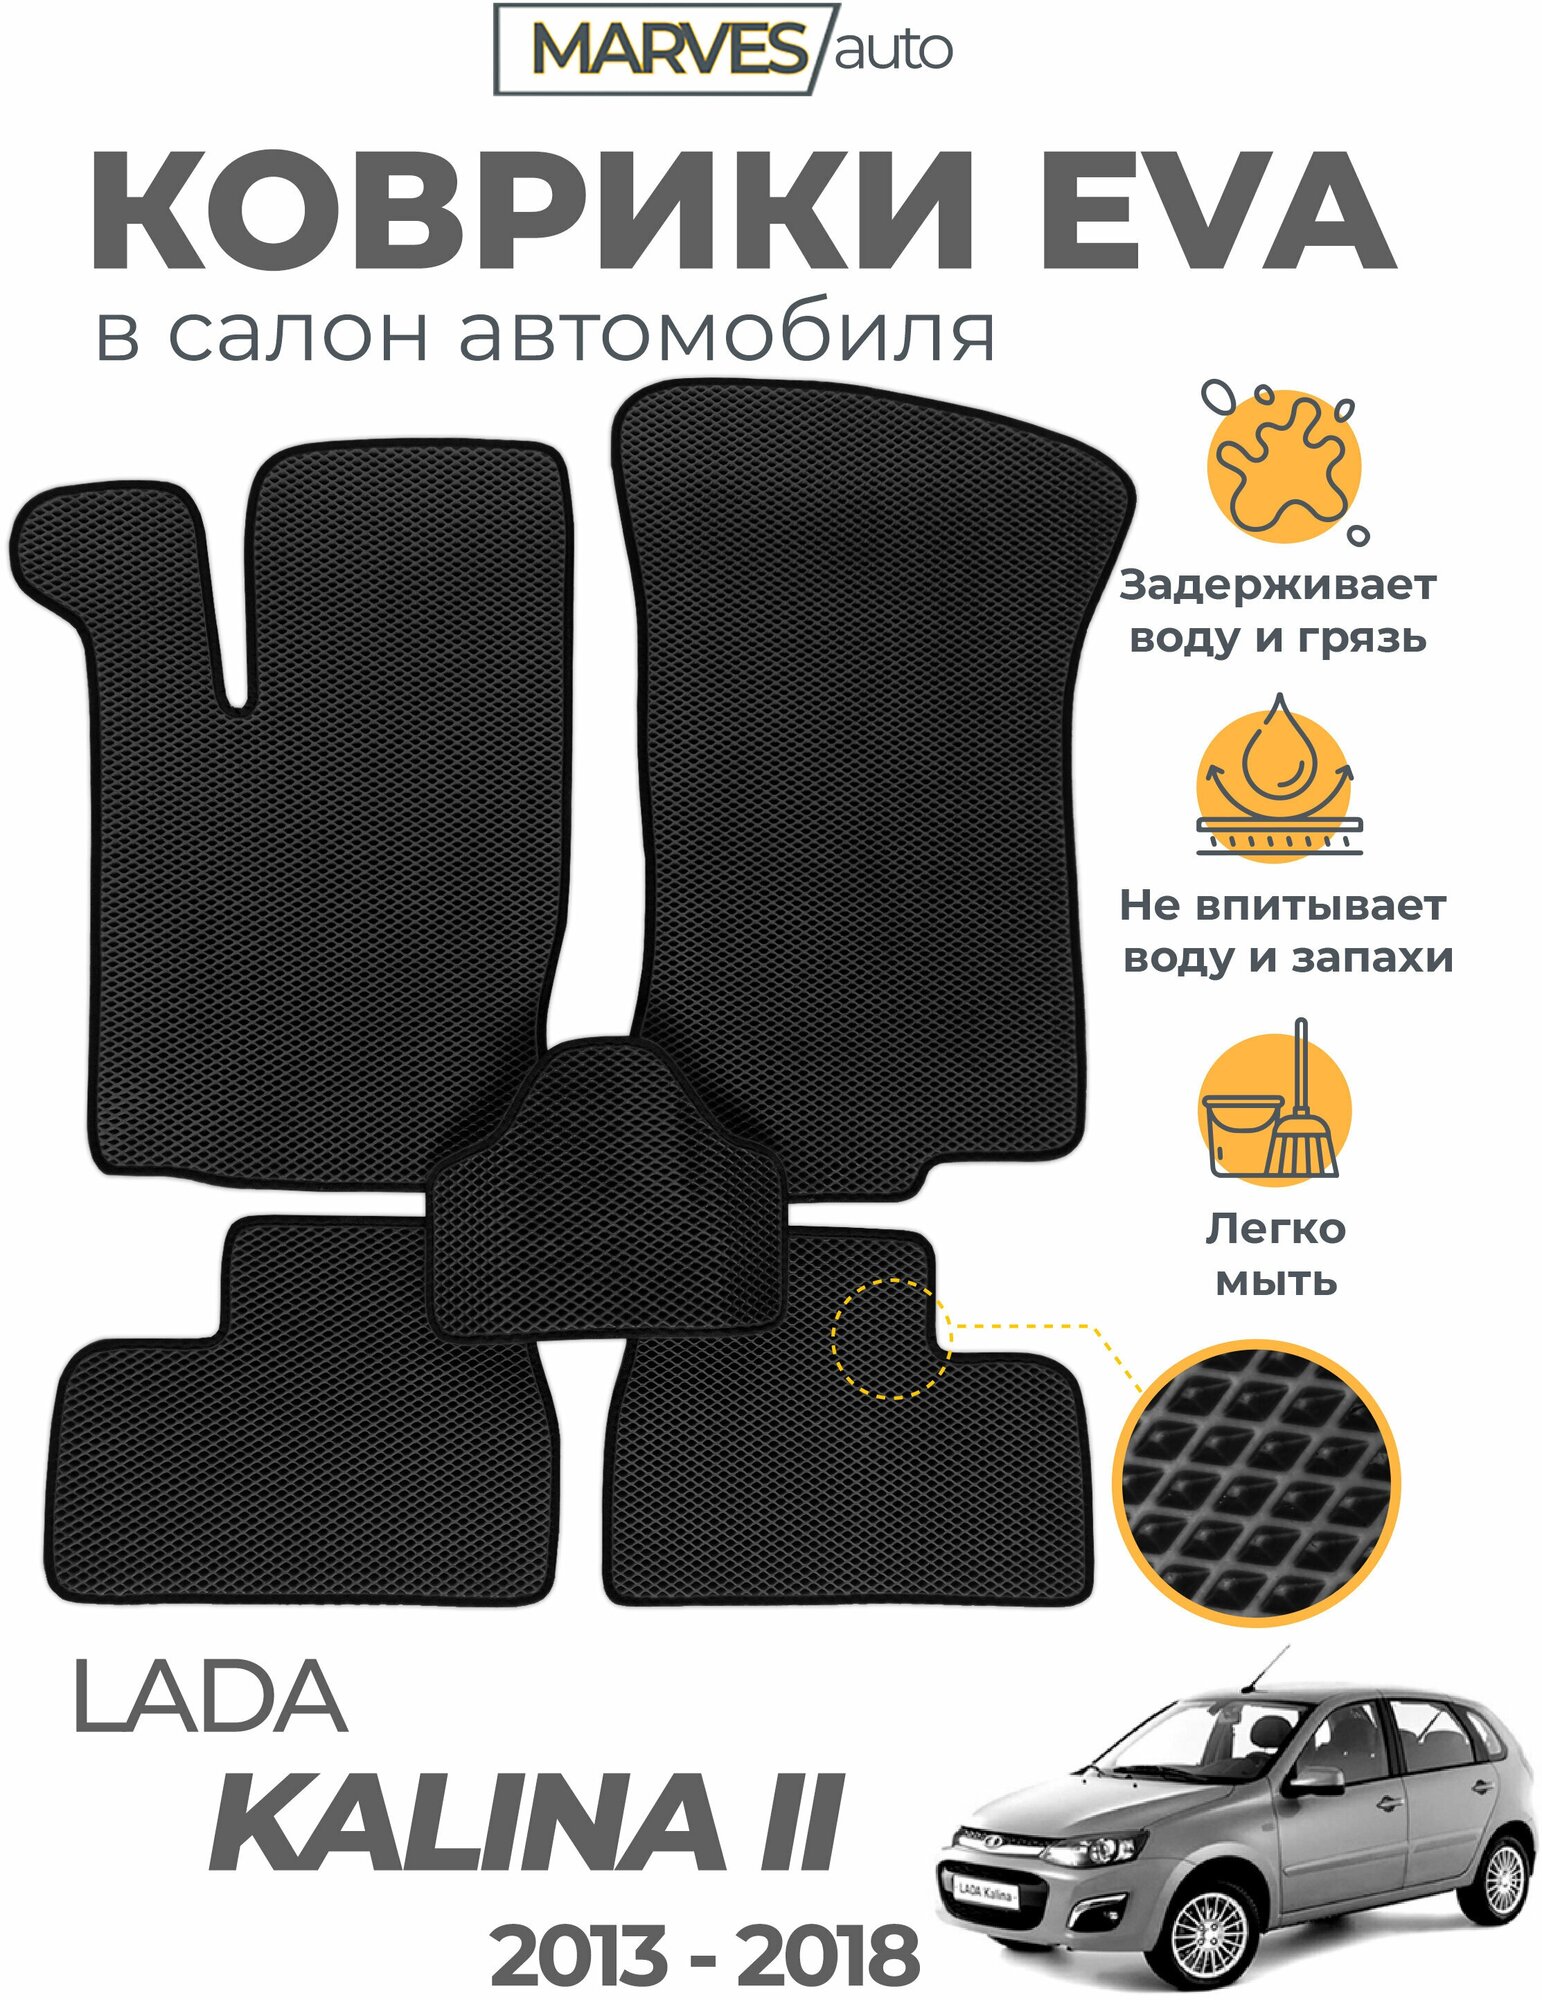 Коврики EVA (ЭВА, ЕВА) в салон автомобиля Лада Калина II 2014-2018, ВАЗ-2192, 2194, комплект 5 шт, черный ромб/черный кант